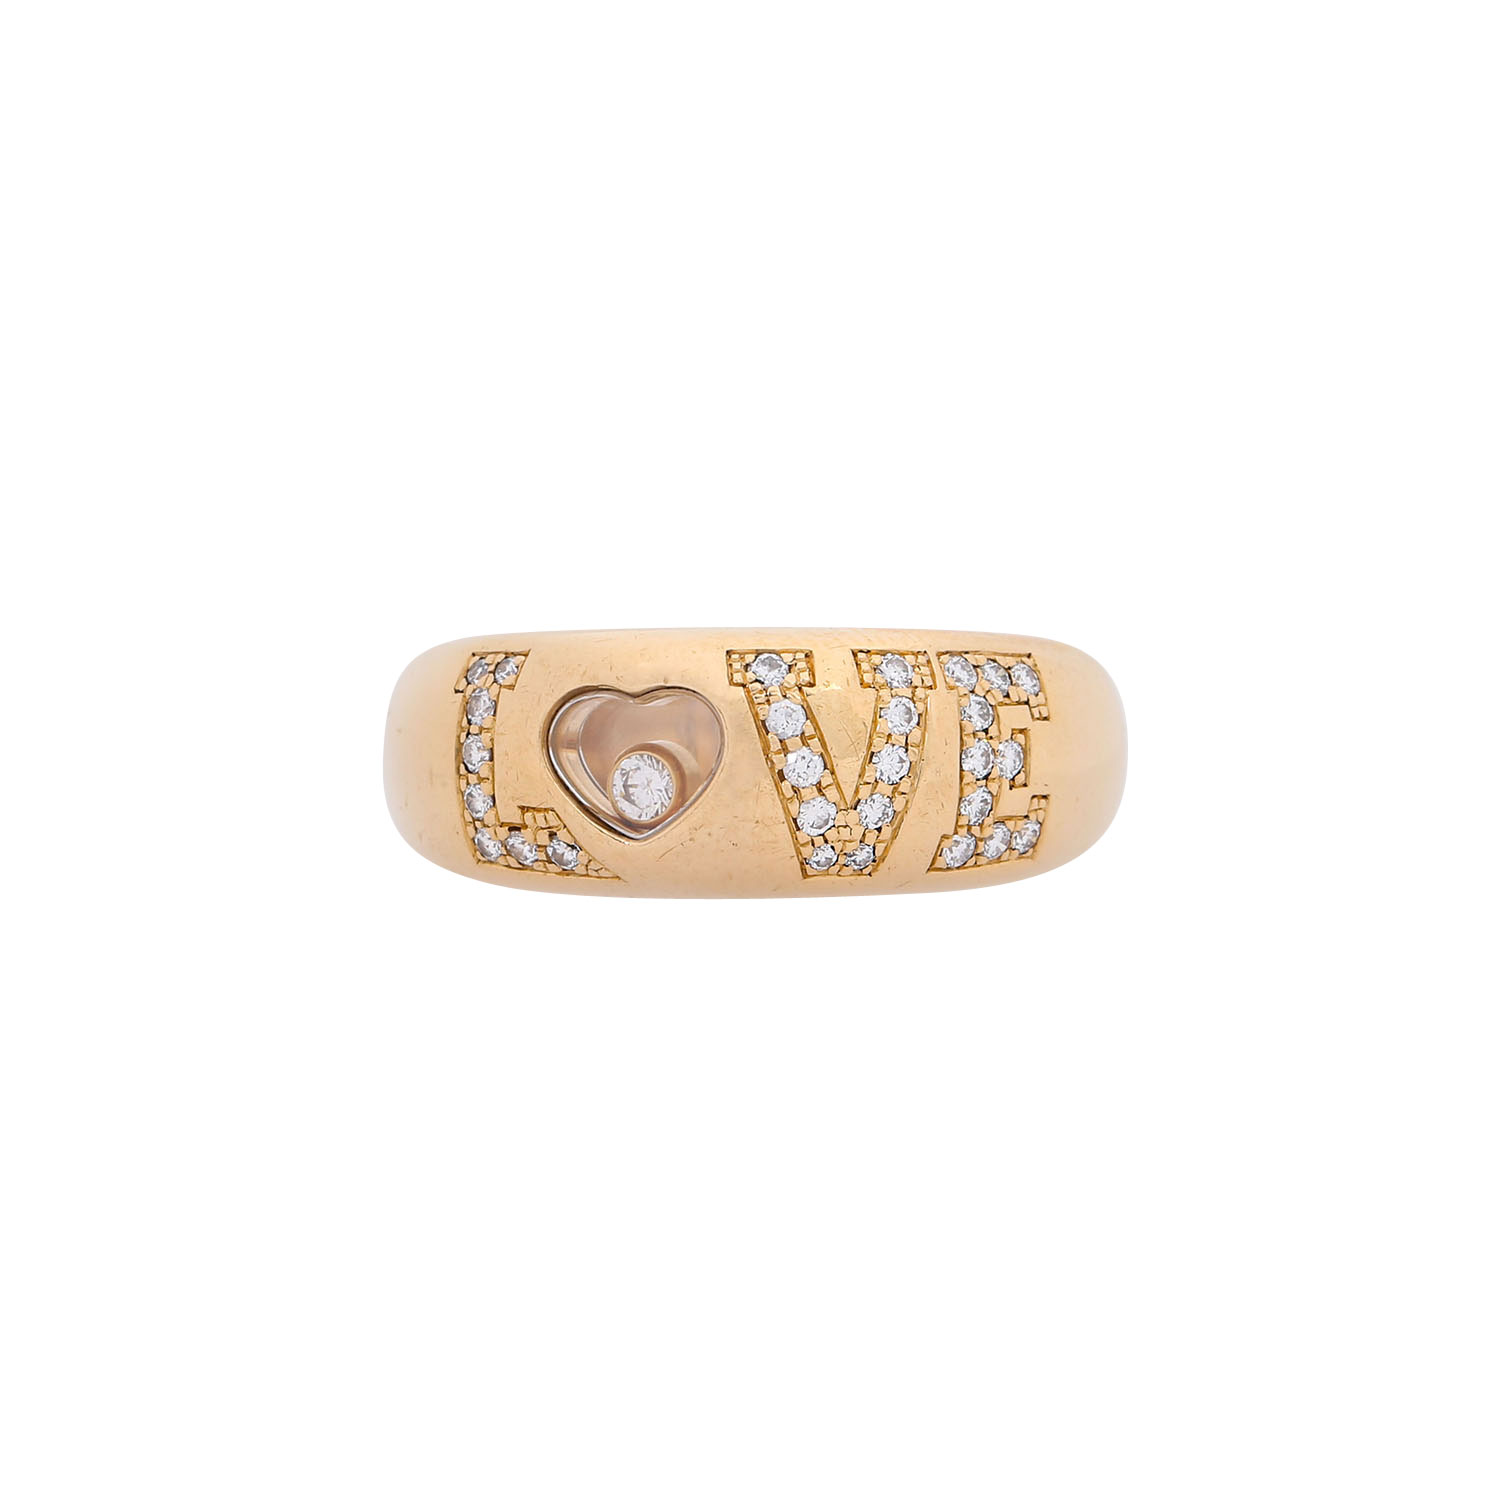 CHOPARD Ring "LOVE" mit Brillanten zus. ca. 0,3 ct, - Image 2 of 4